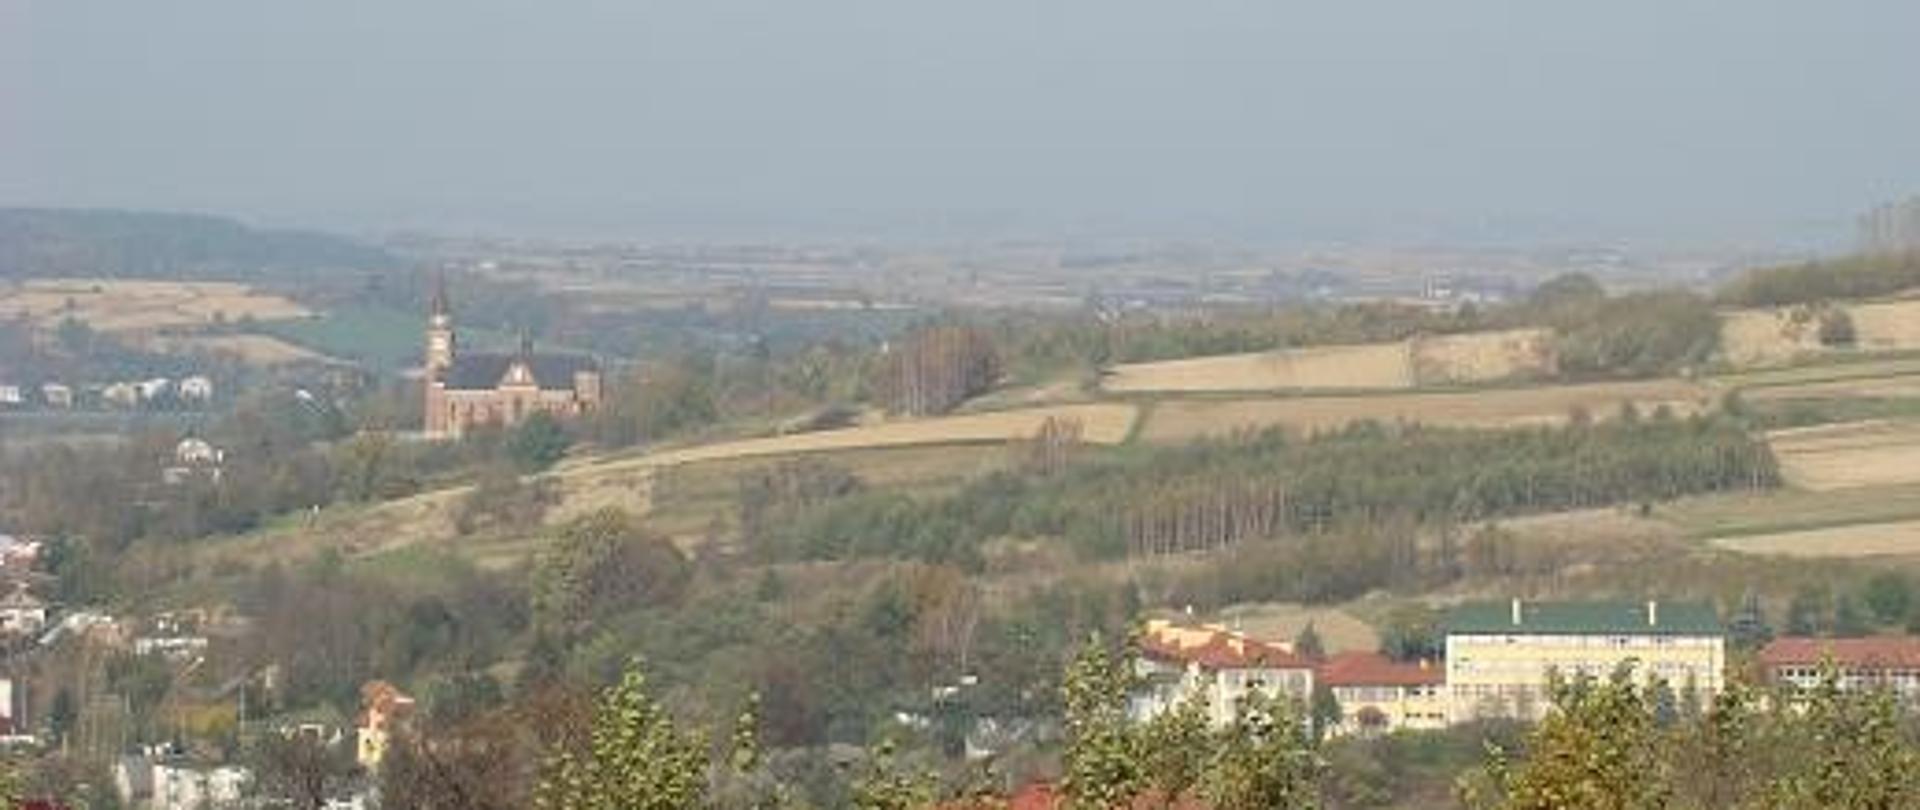 zdjęcie widokowe widoczna część miejscowości Lubenia w tle zbocze z kościołem w tle widoczna szkoła w Lubeni zabudowania pola uprawne i zadrzewienia widoczny horyzont z przyległymi gminami